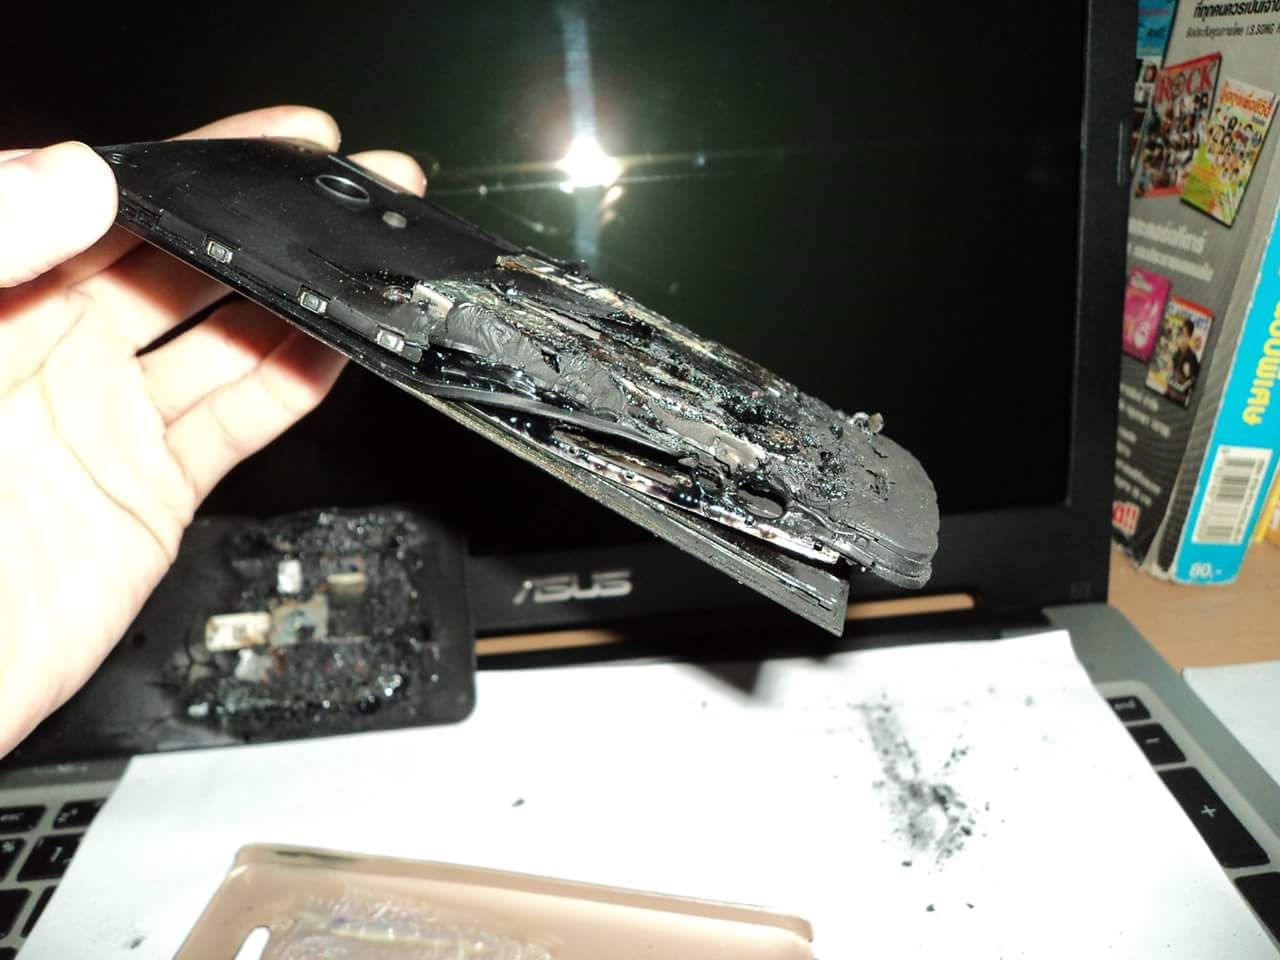 เกิดเหตุ Asus Zenfone 5 ระเบิดขณะเสียบชาร์จทิ้งไว้ สาเหตุยังไม่ทราบแน่ชัด